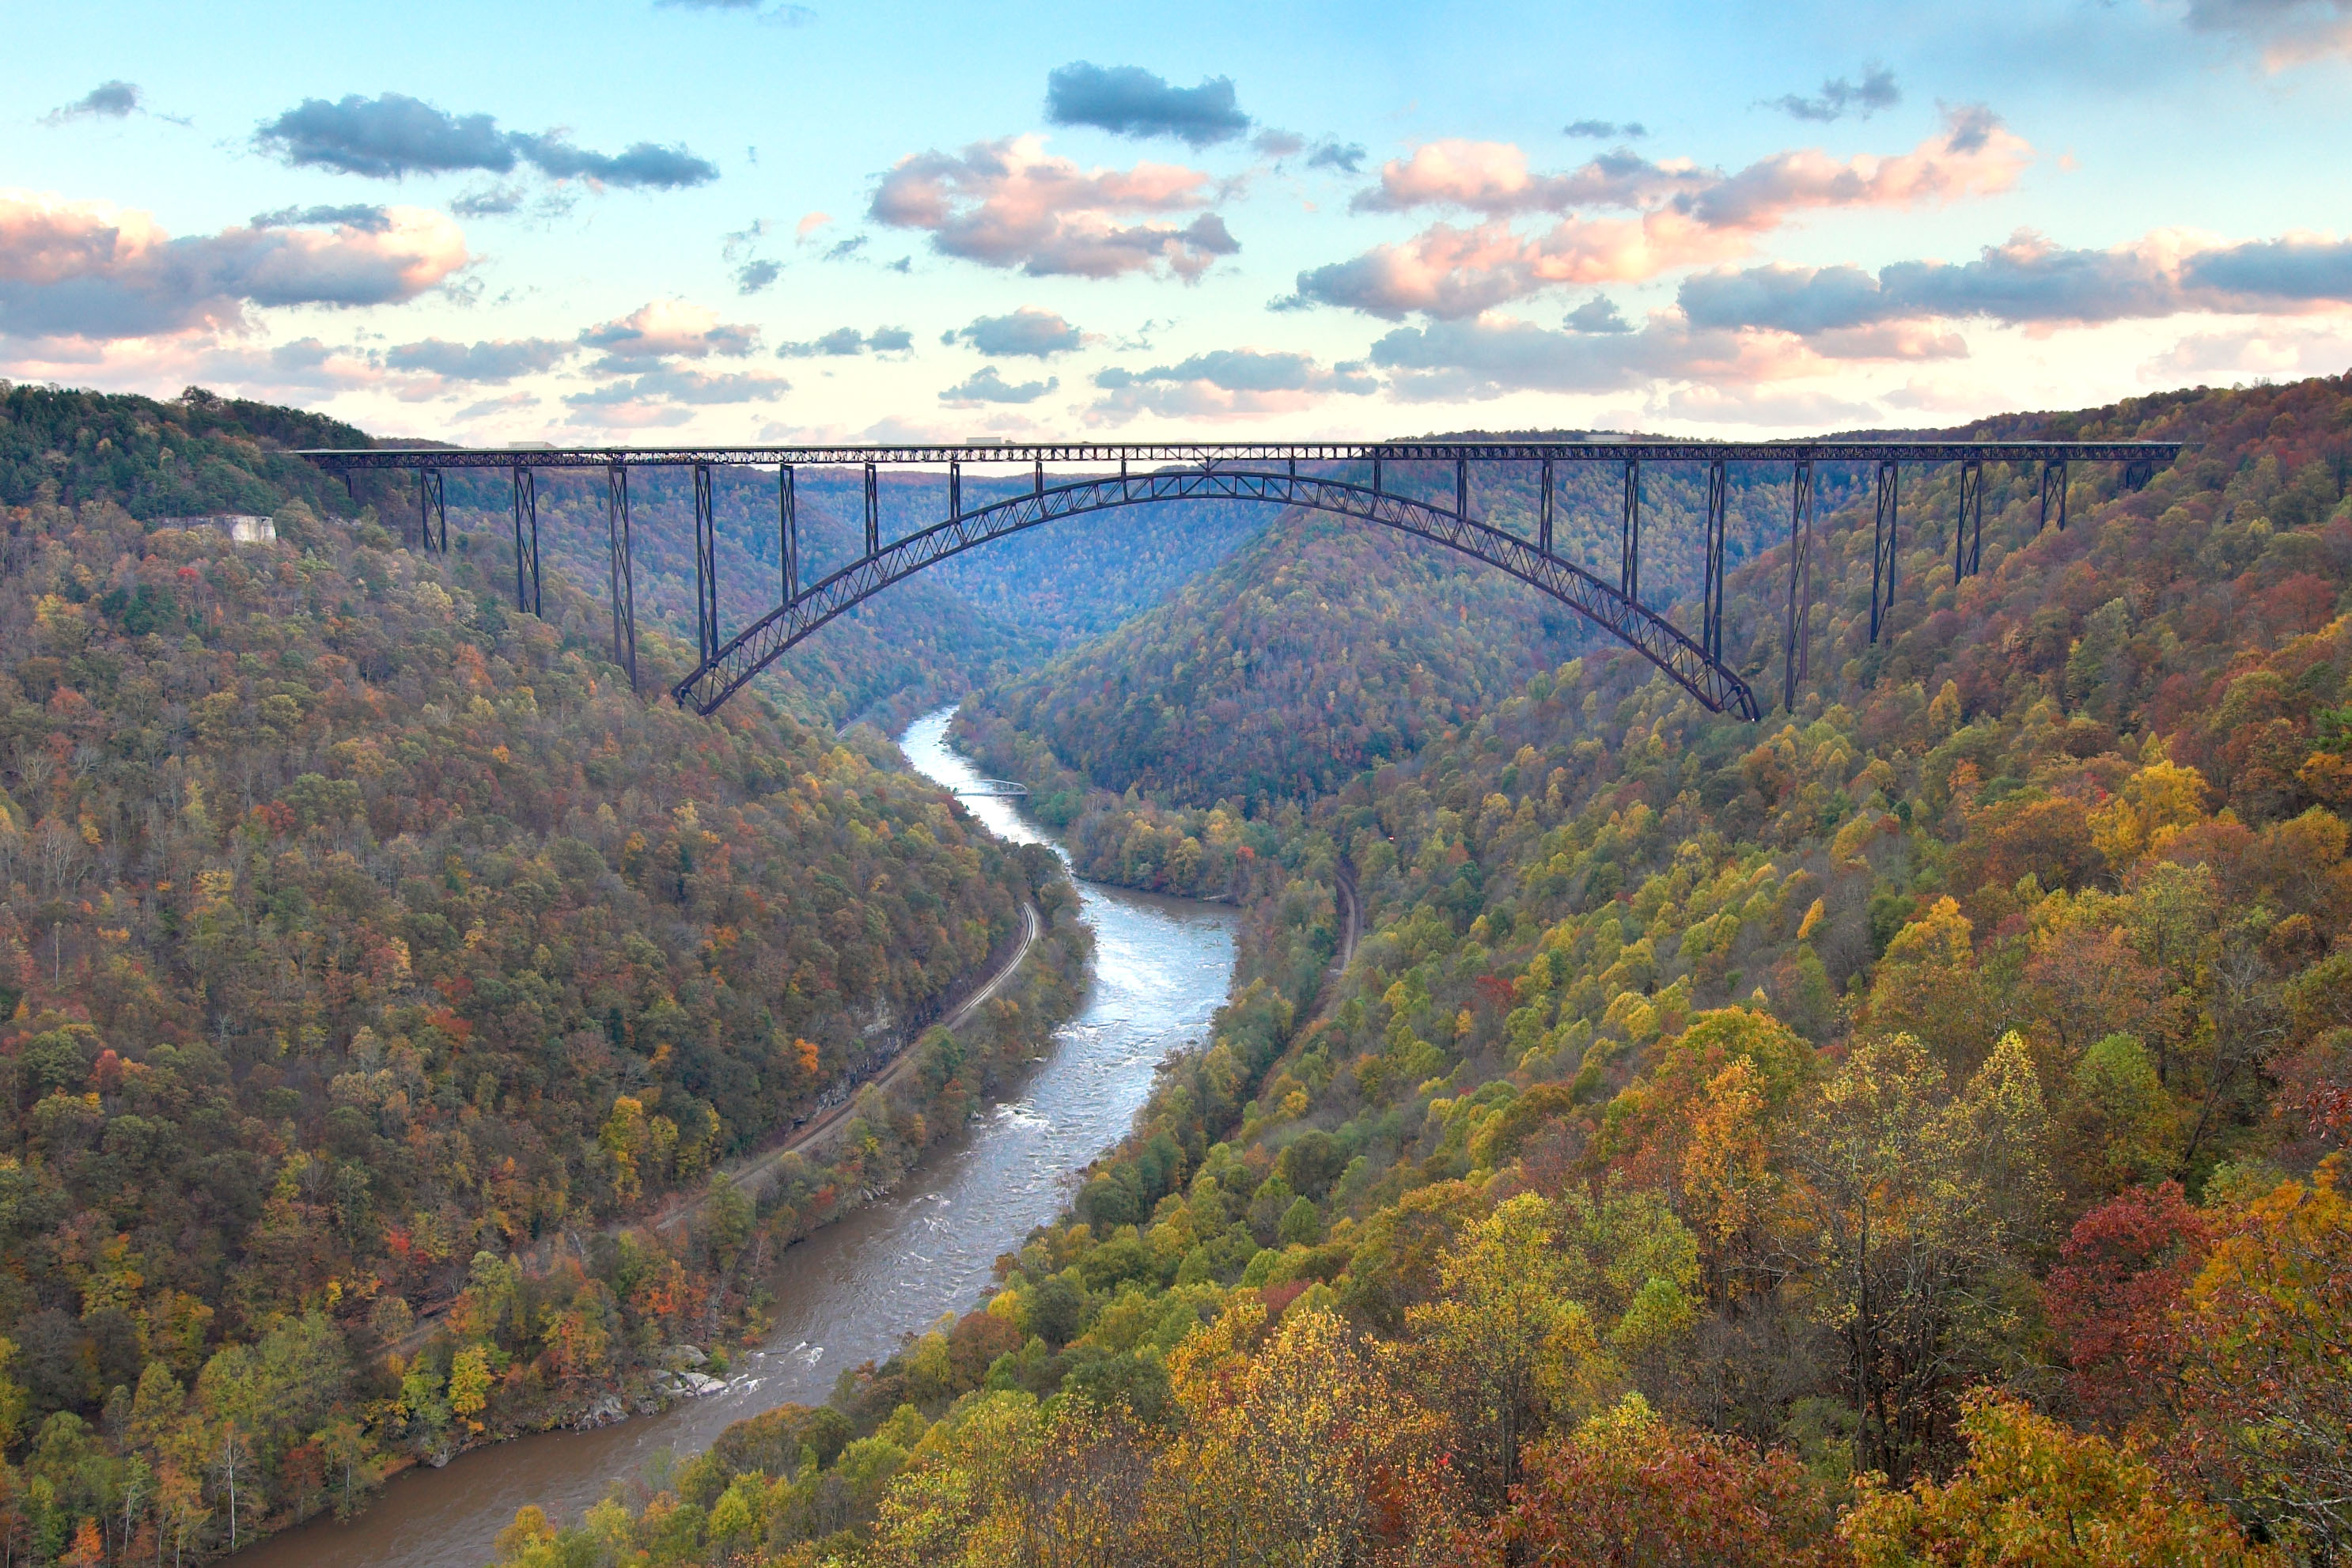 West river. Нью-Ривер-Гордж (мост). Мост Нью Ривер Гордж в США. Мост Нью-Ривер-Гордж, Западная Вирджиния.